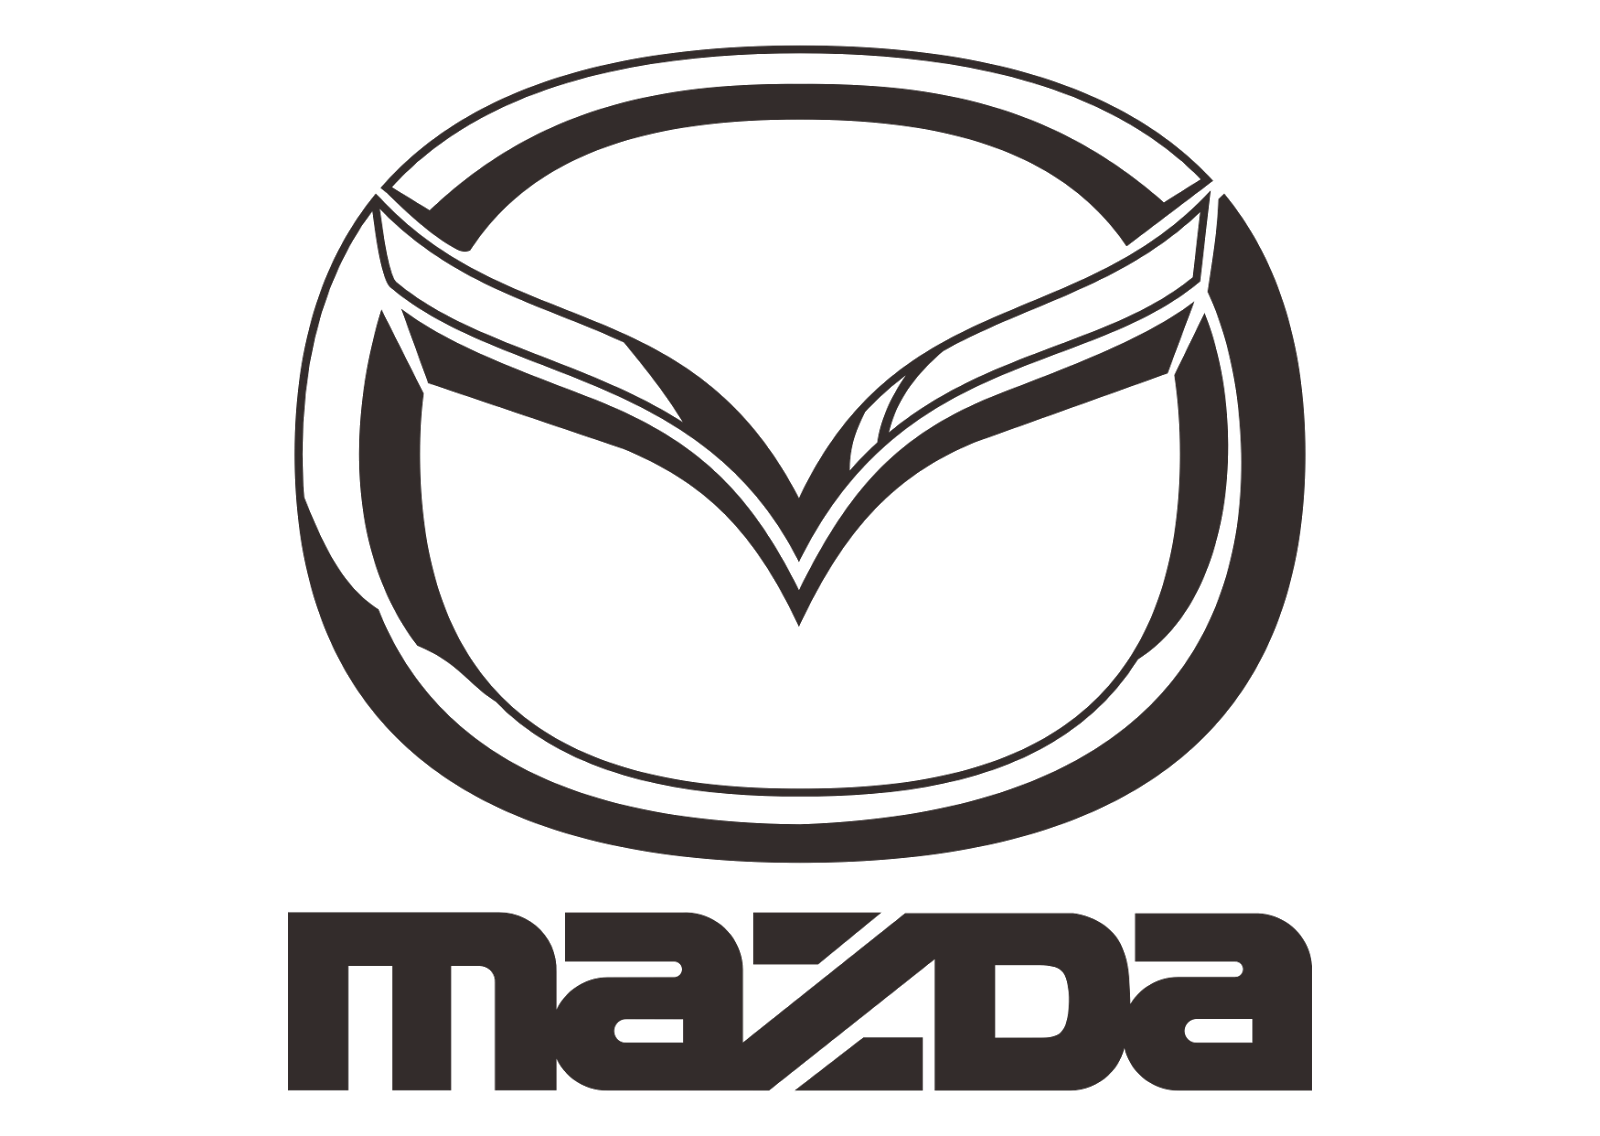 Mazda Logo Png Image Backgrou